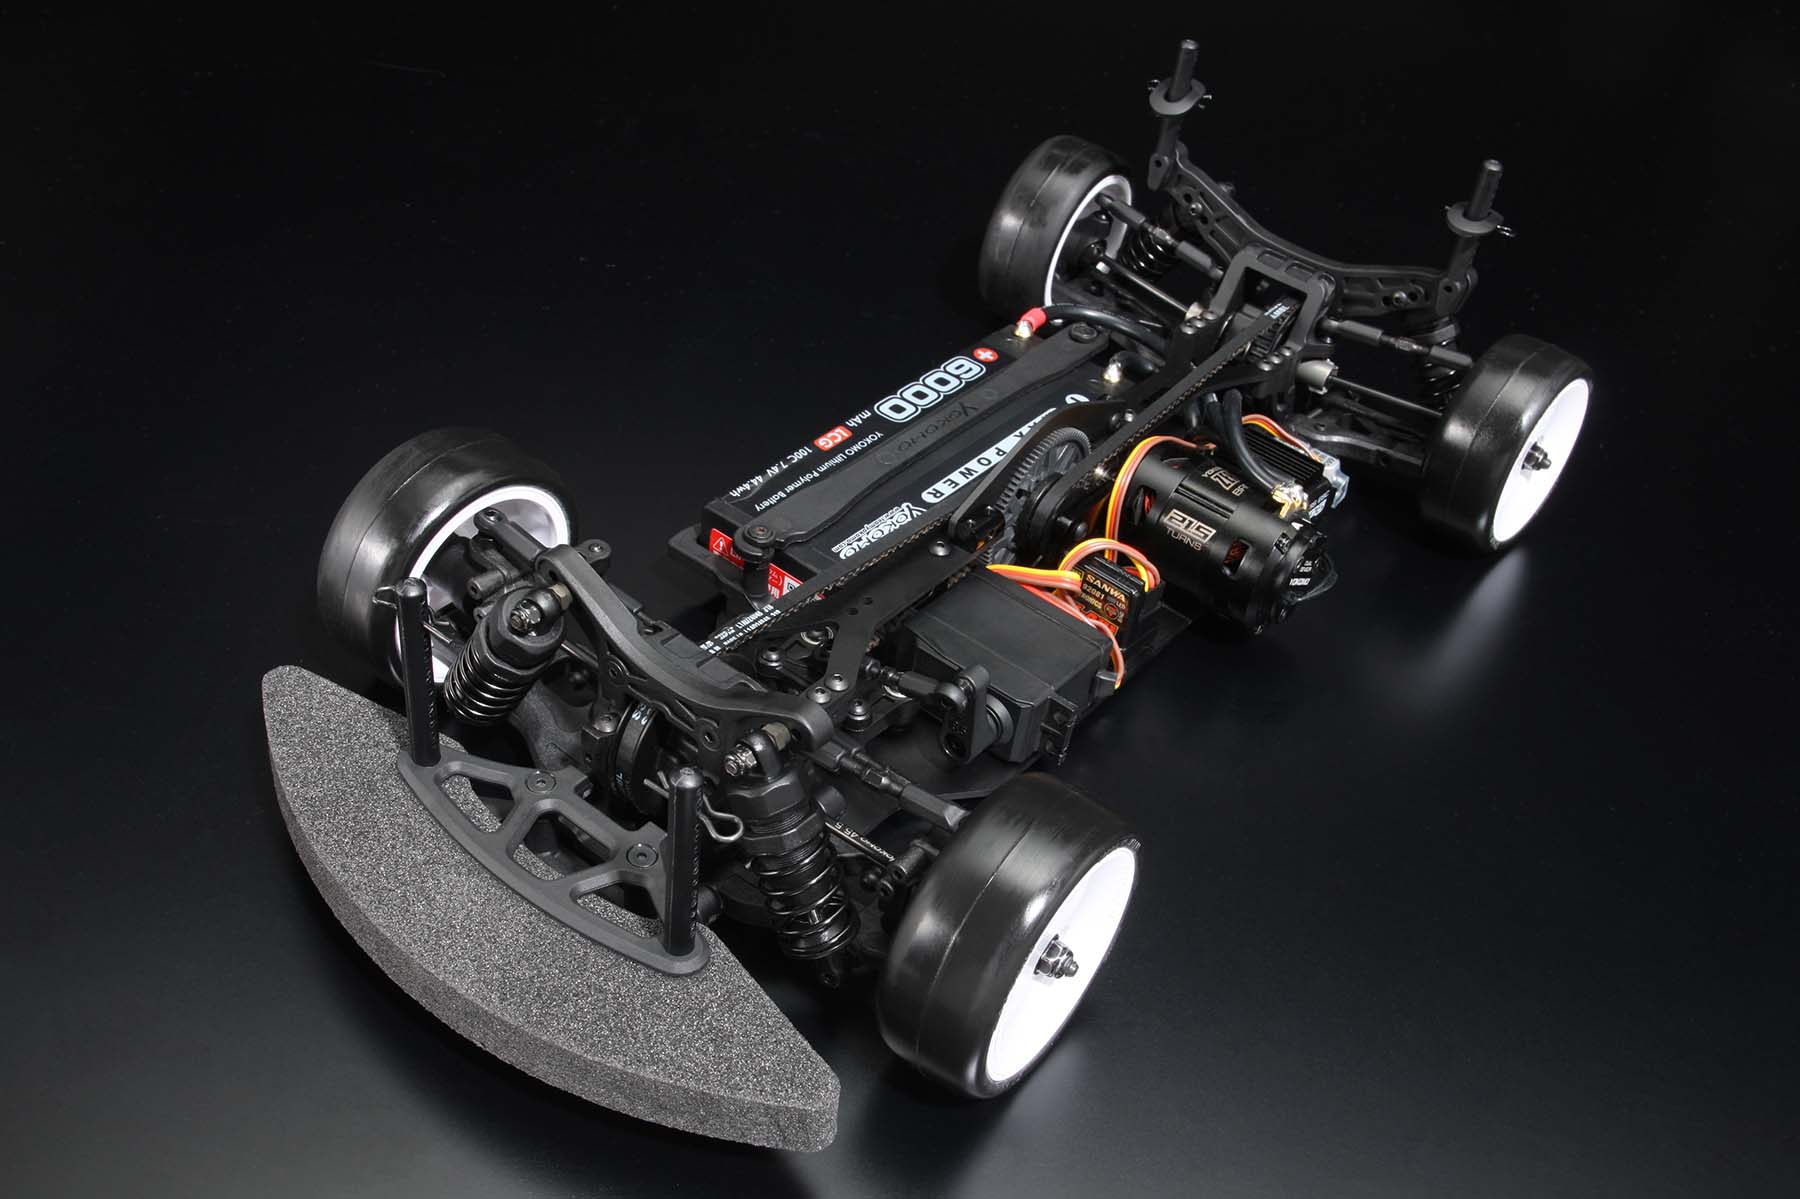 ヨコモ 【再生産】1/10 電動RCカー組立キット ルーキースピード RS1.0 シャーシキット【RSR-010】 ラジコン 1